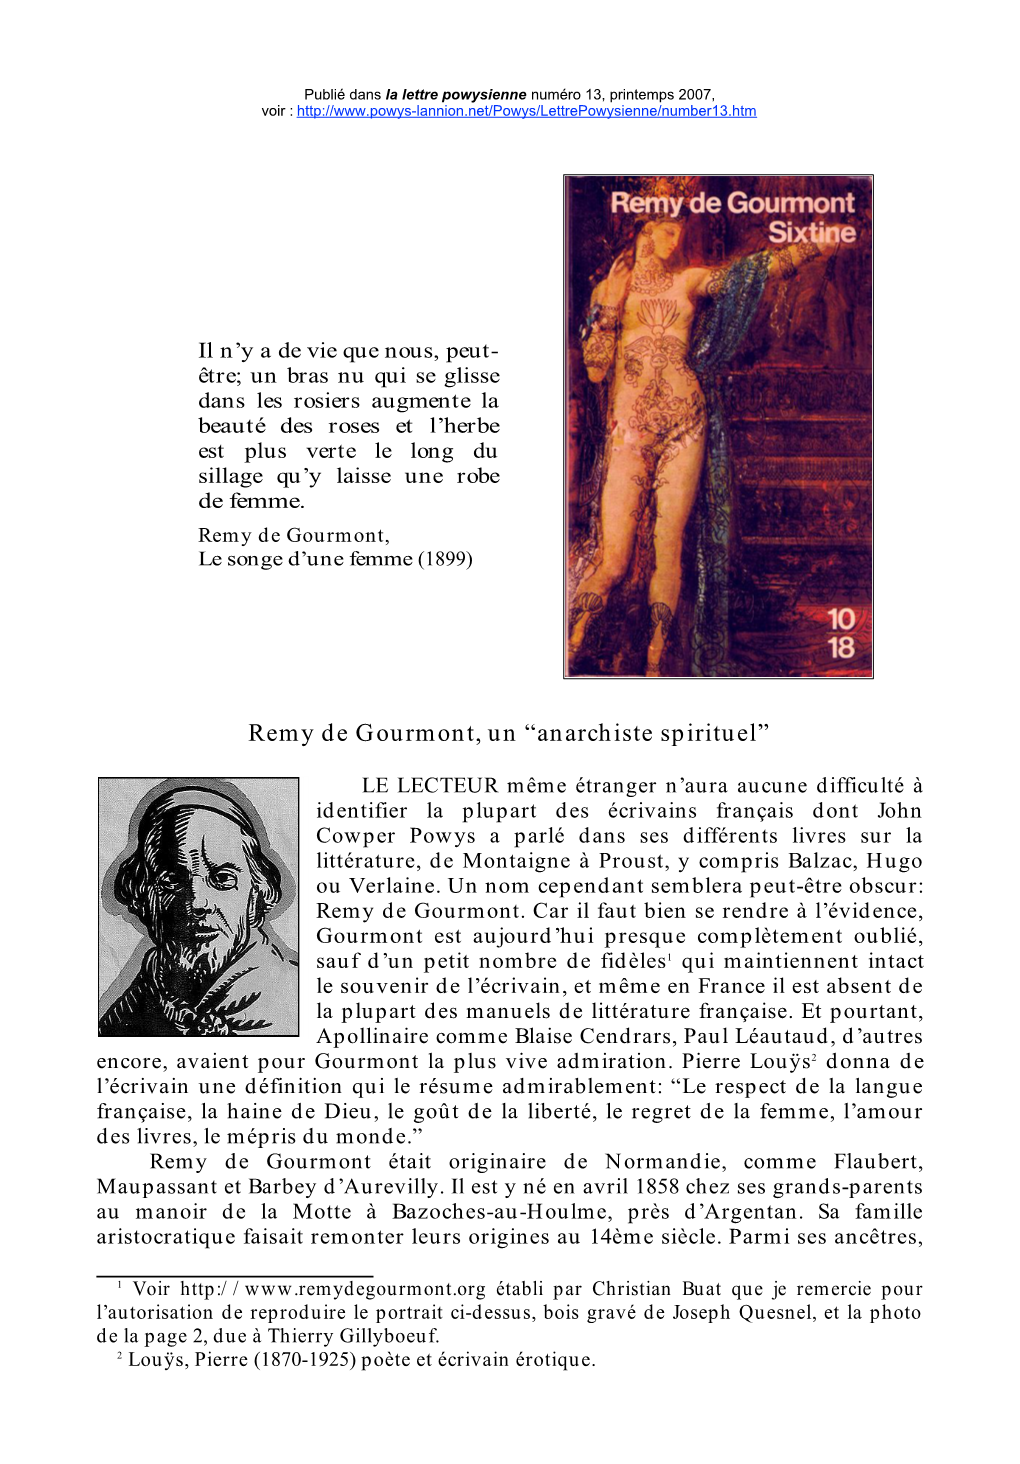 Remy De Gourmont, Un “Anarchiste Spirituel”